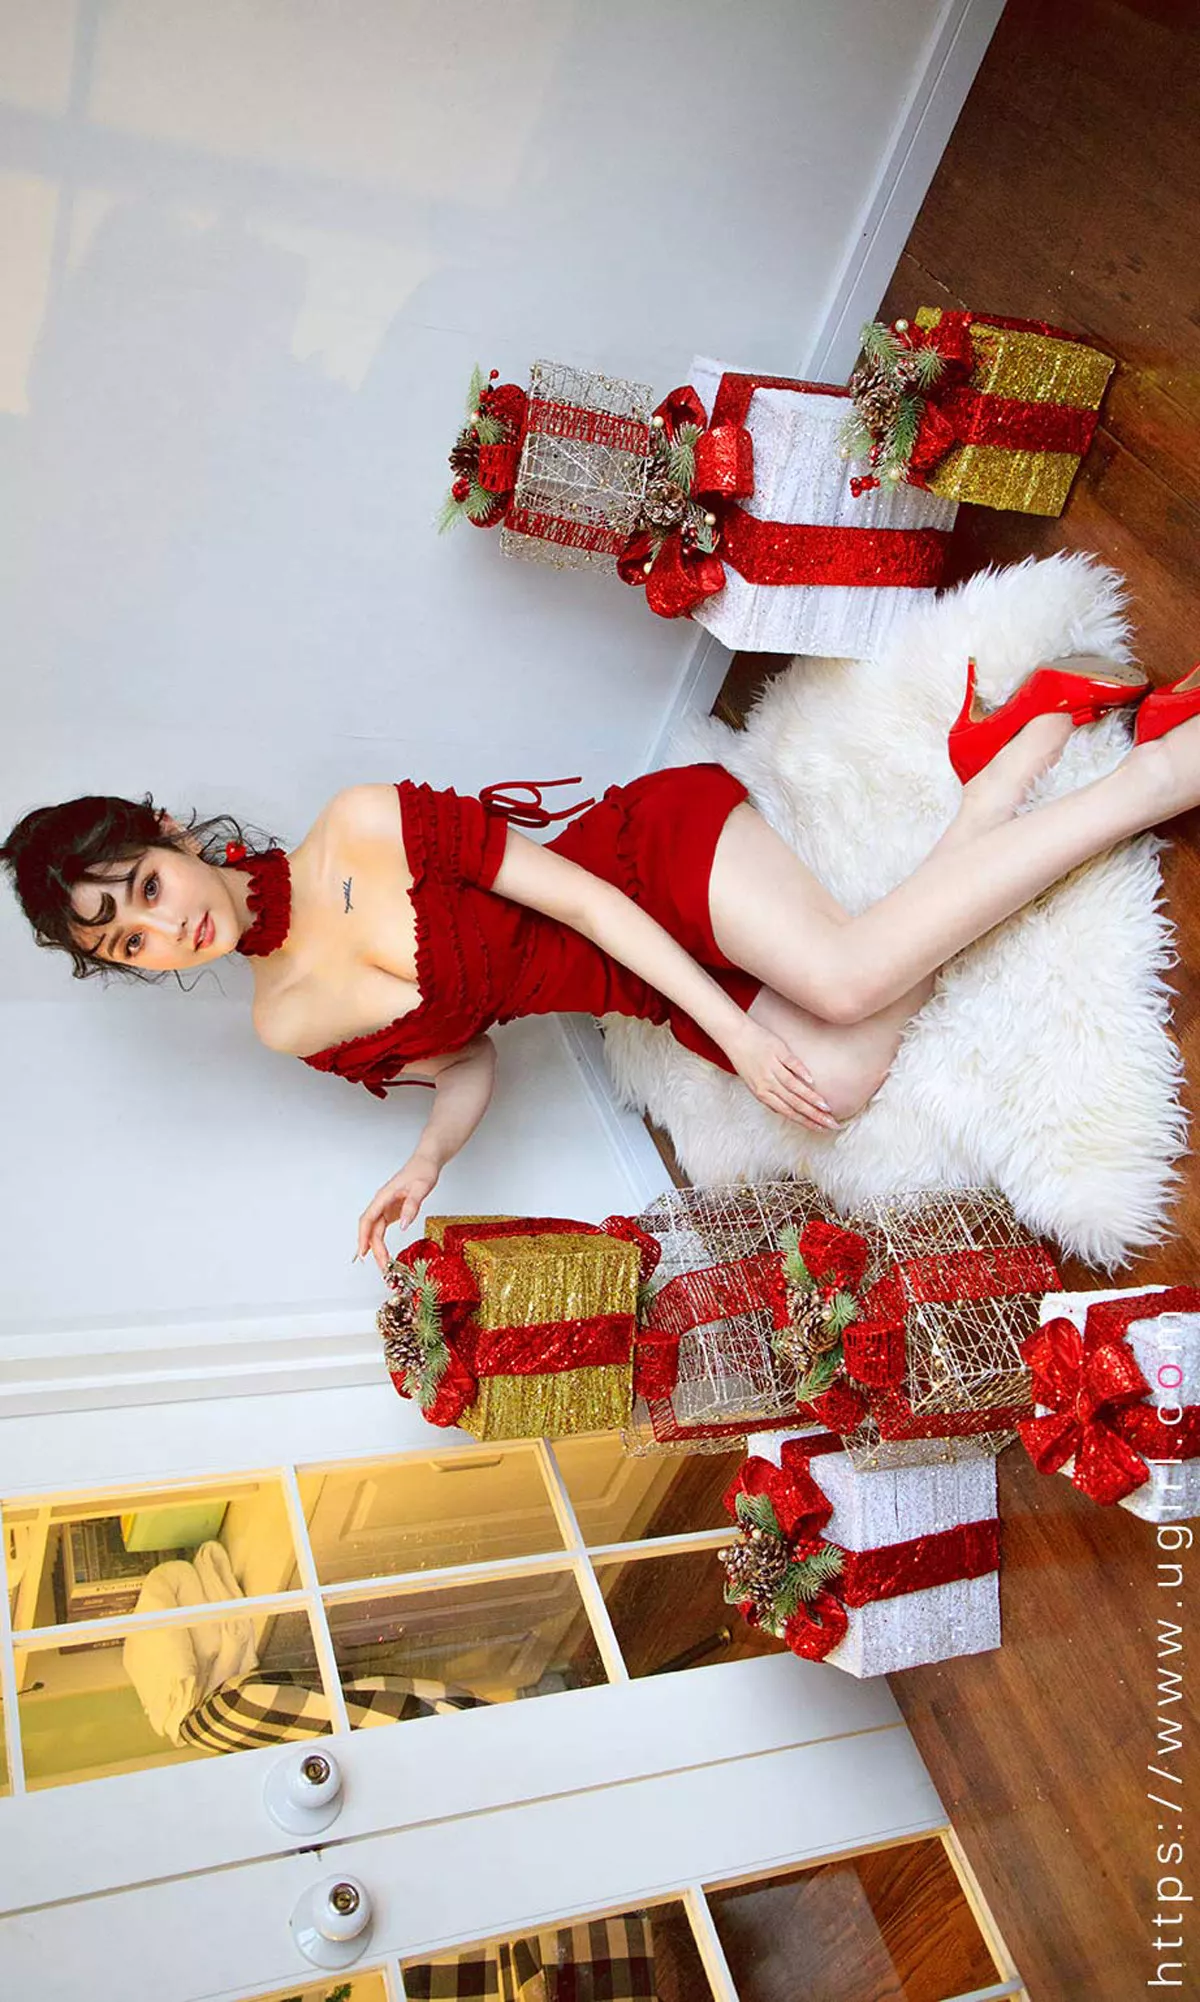 Xgyw.Org_[Ugirls爱尤物]No.1672_嫩模露儿圣诞礼物主题红色抹胸连身裙半露豪乳诱惑写真35P